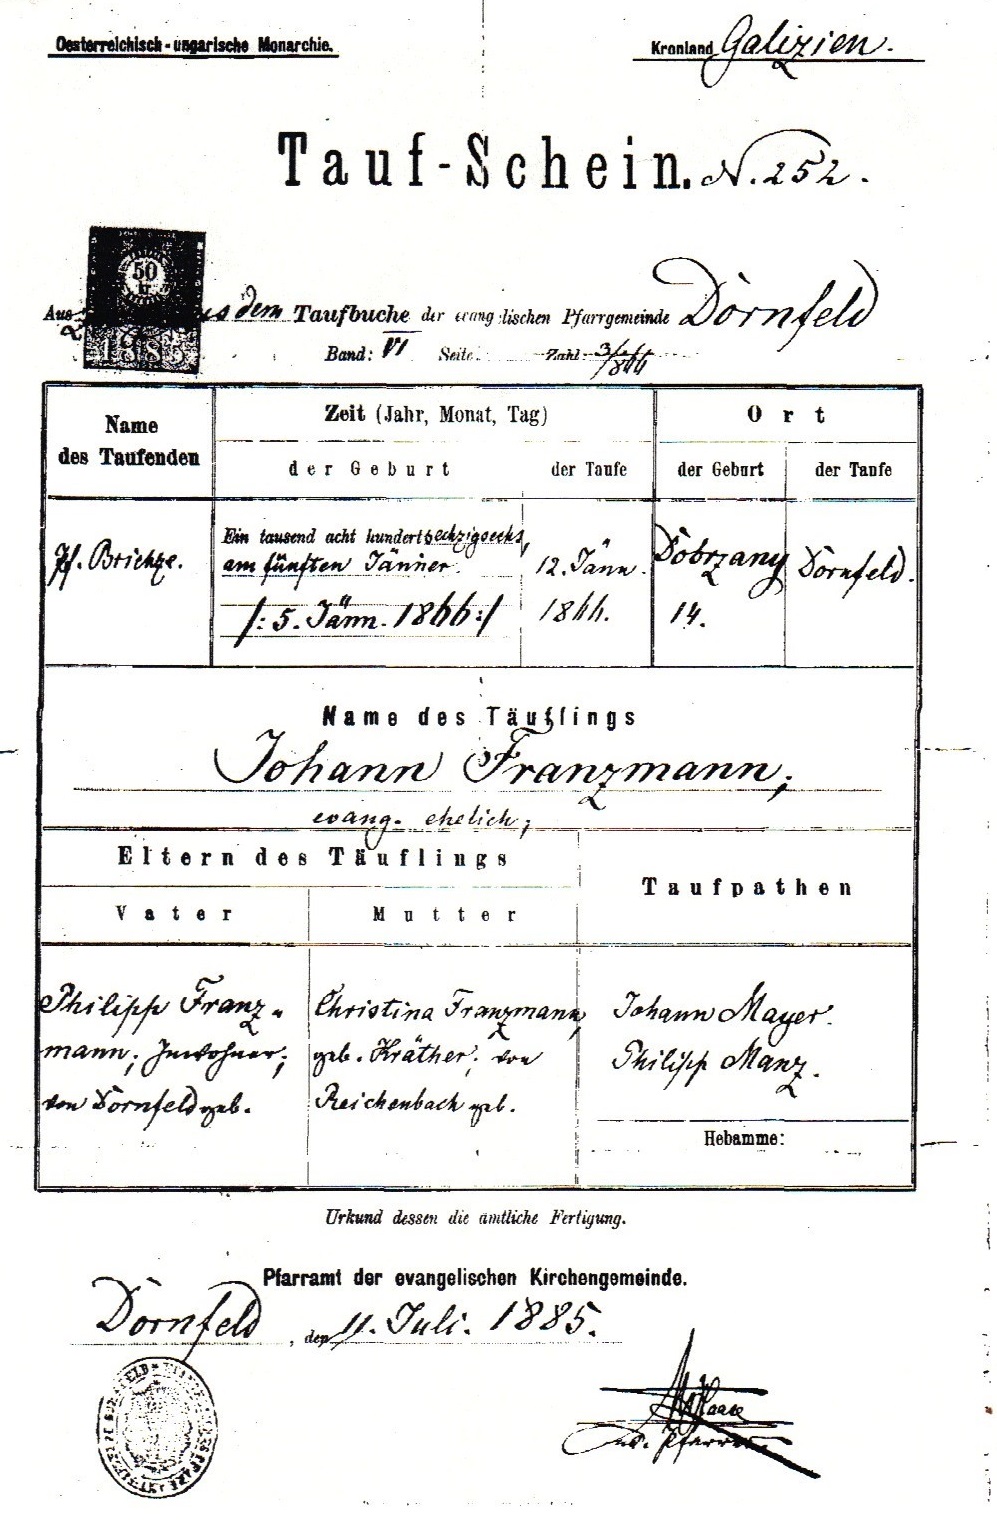 Johann Franzmann Baptism Certificate